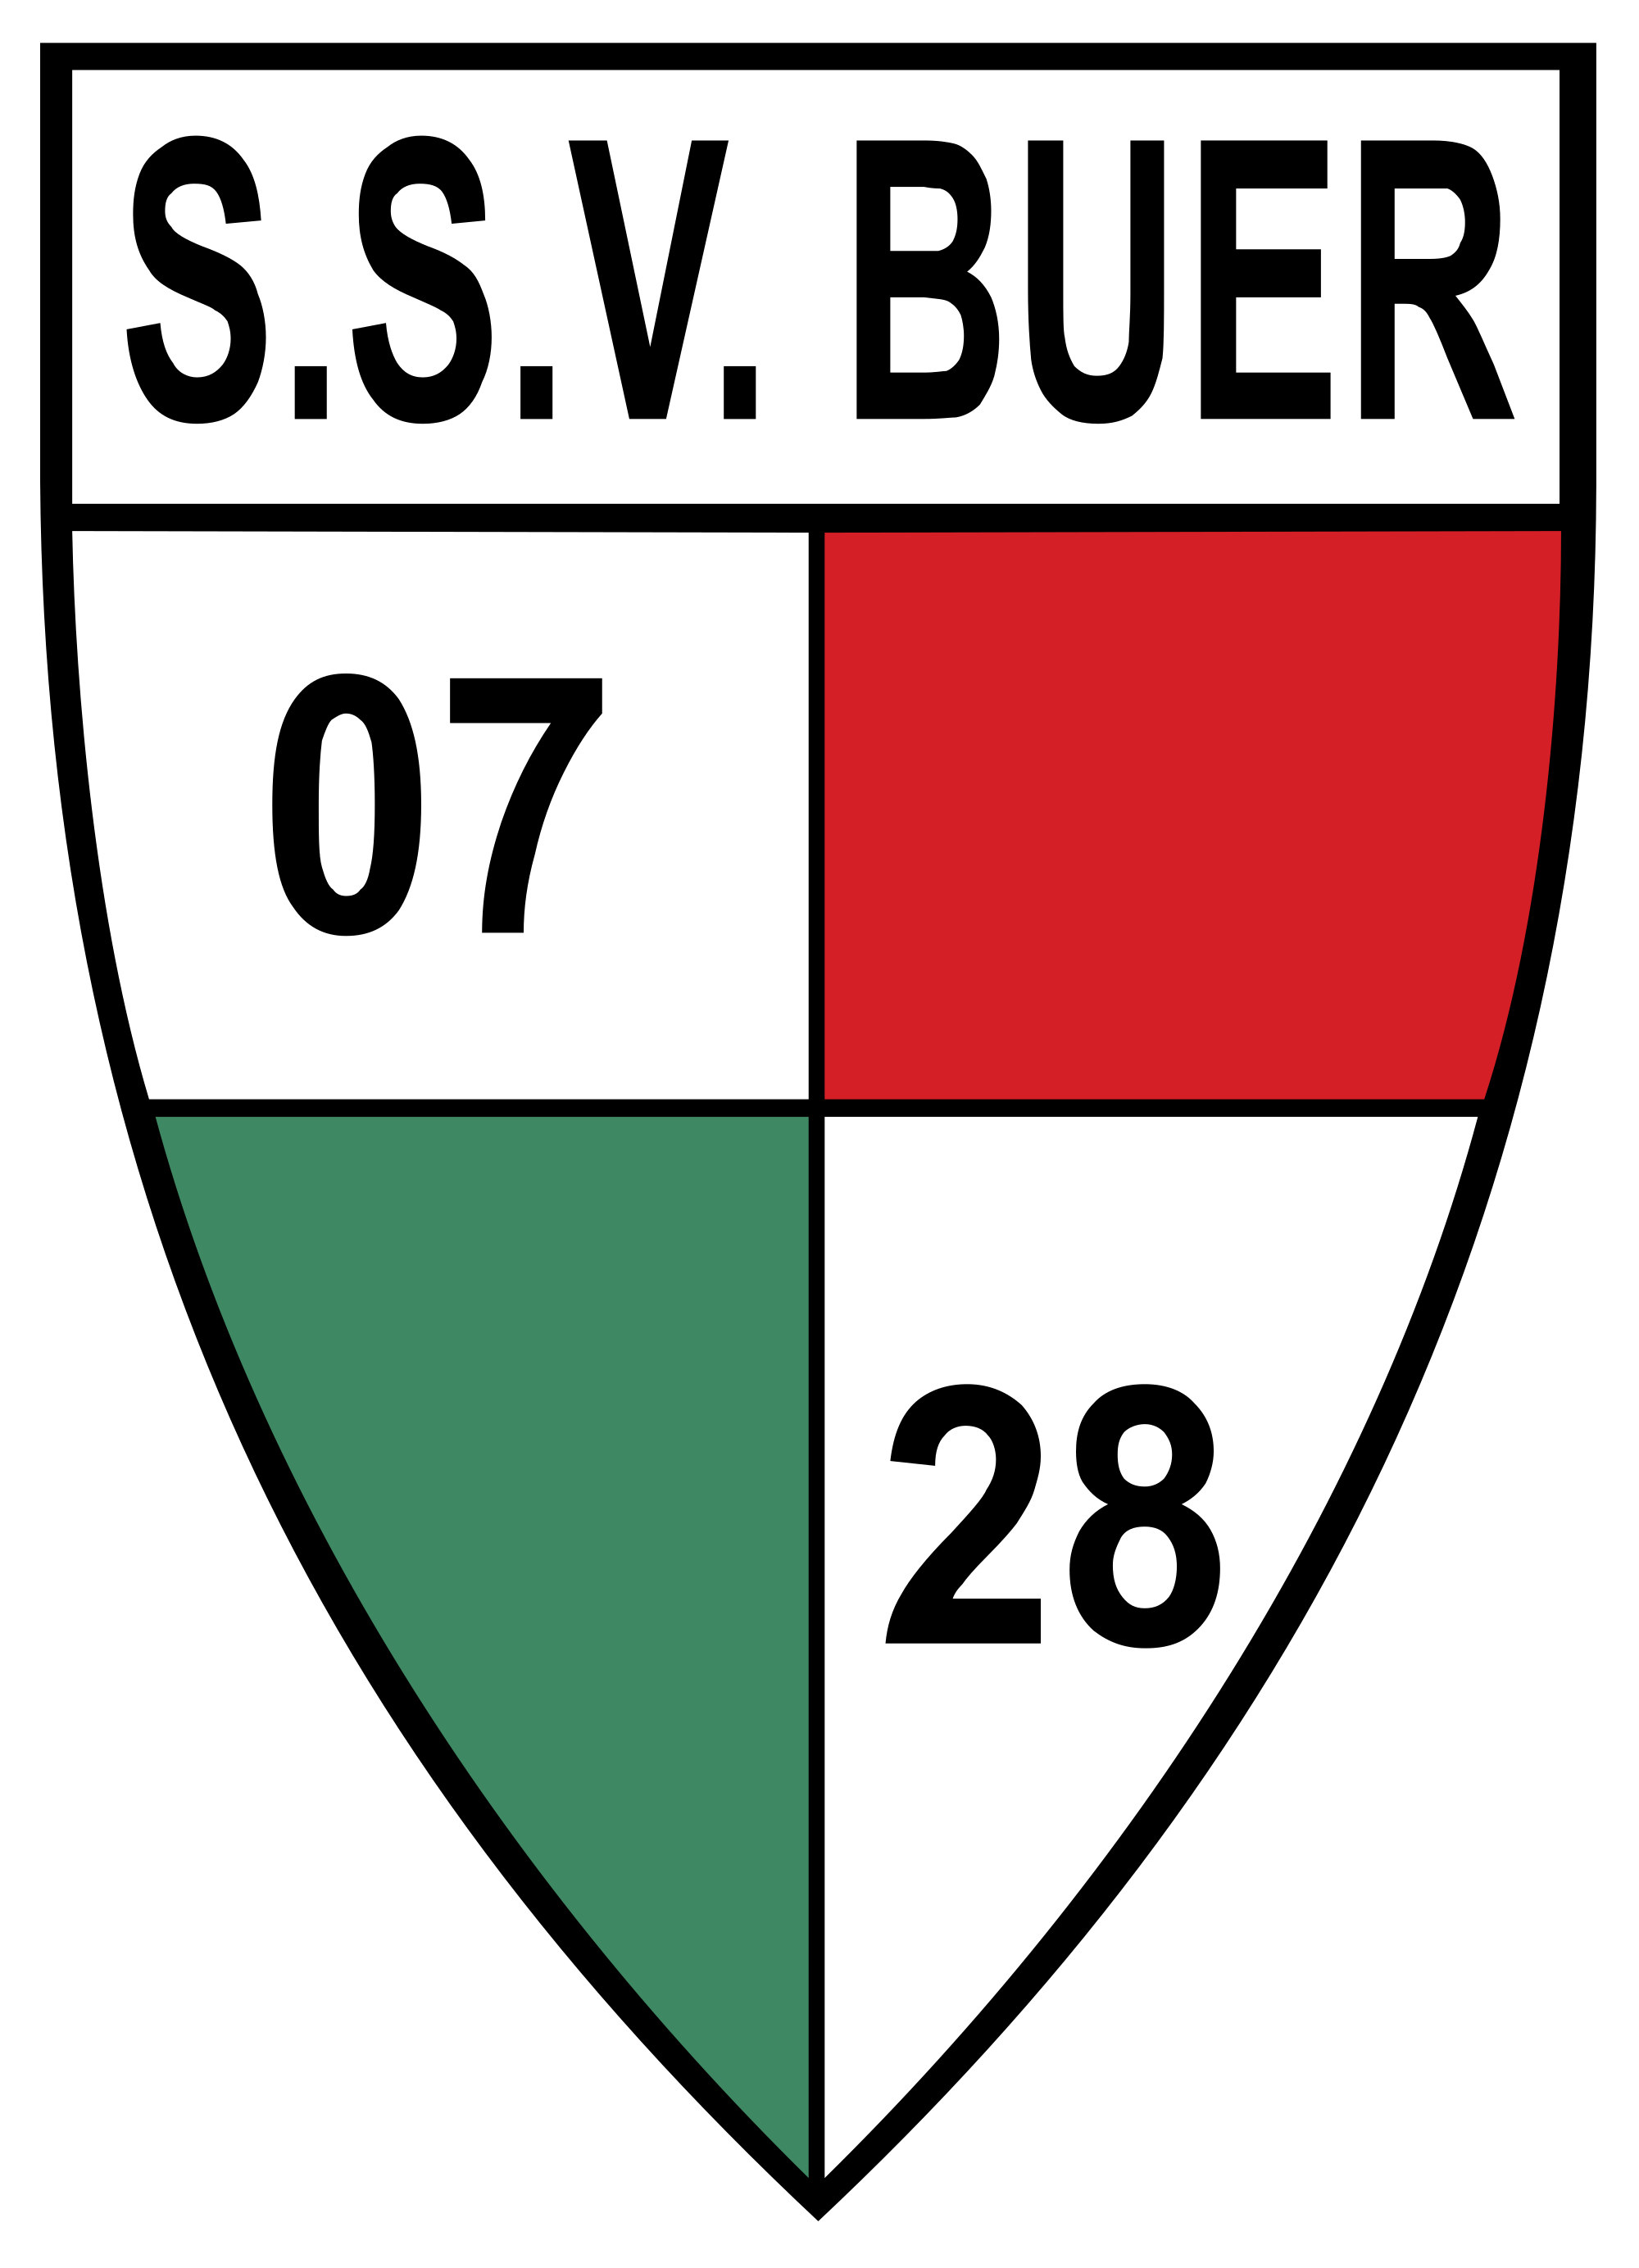 Wappen SSV Buer 07/28 II  16972